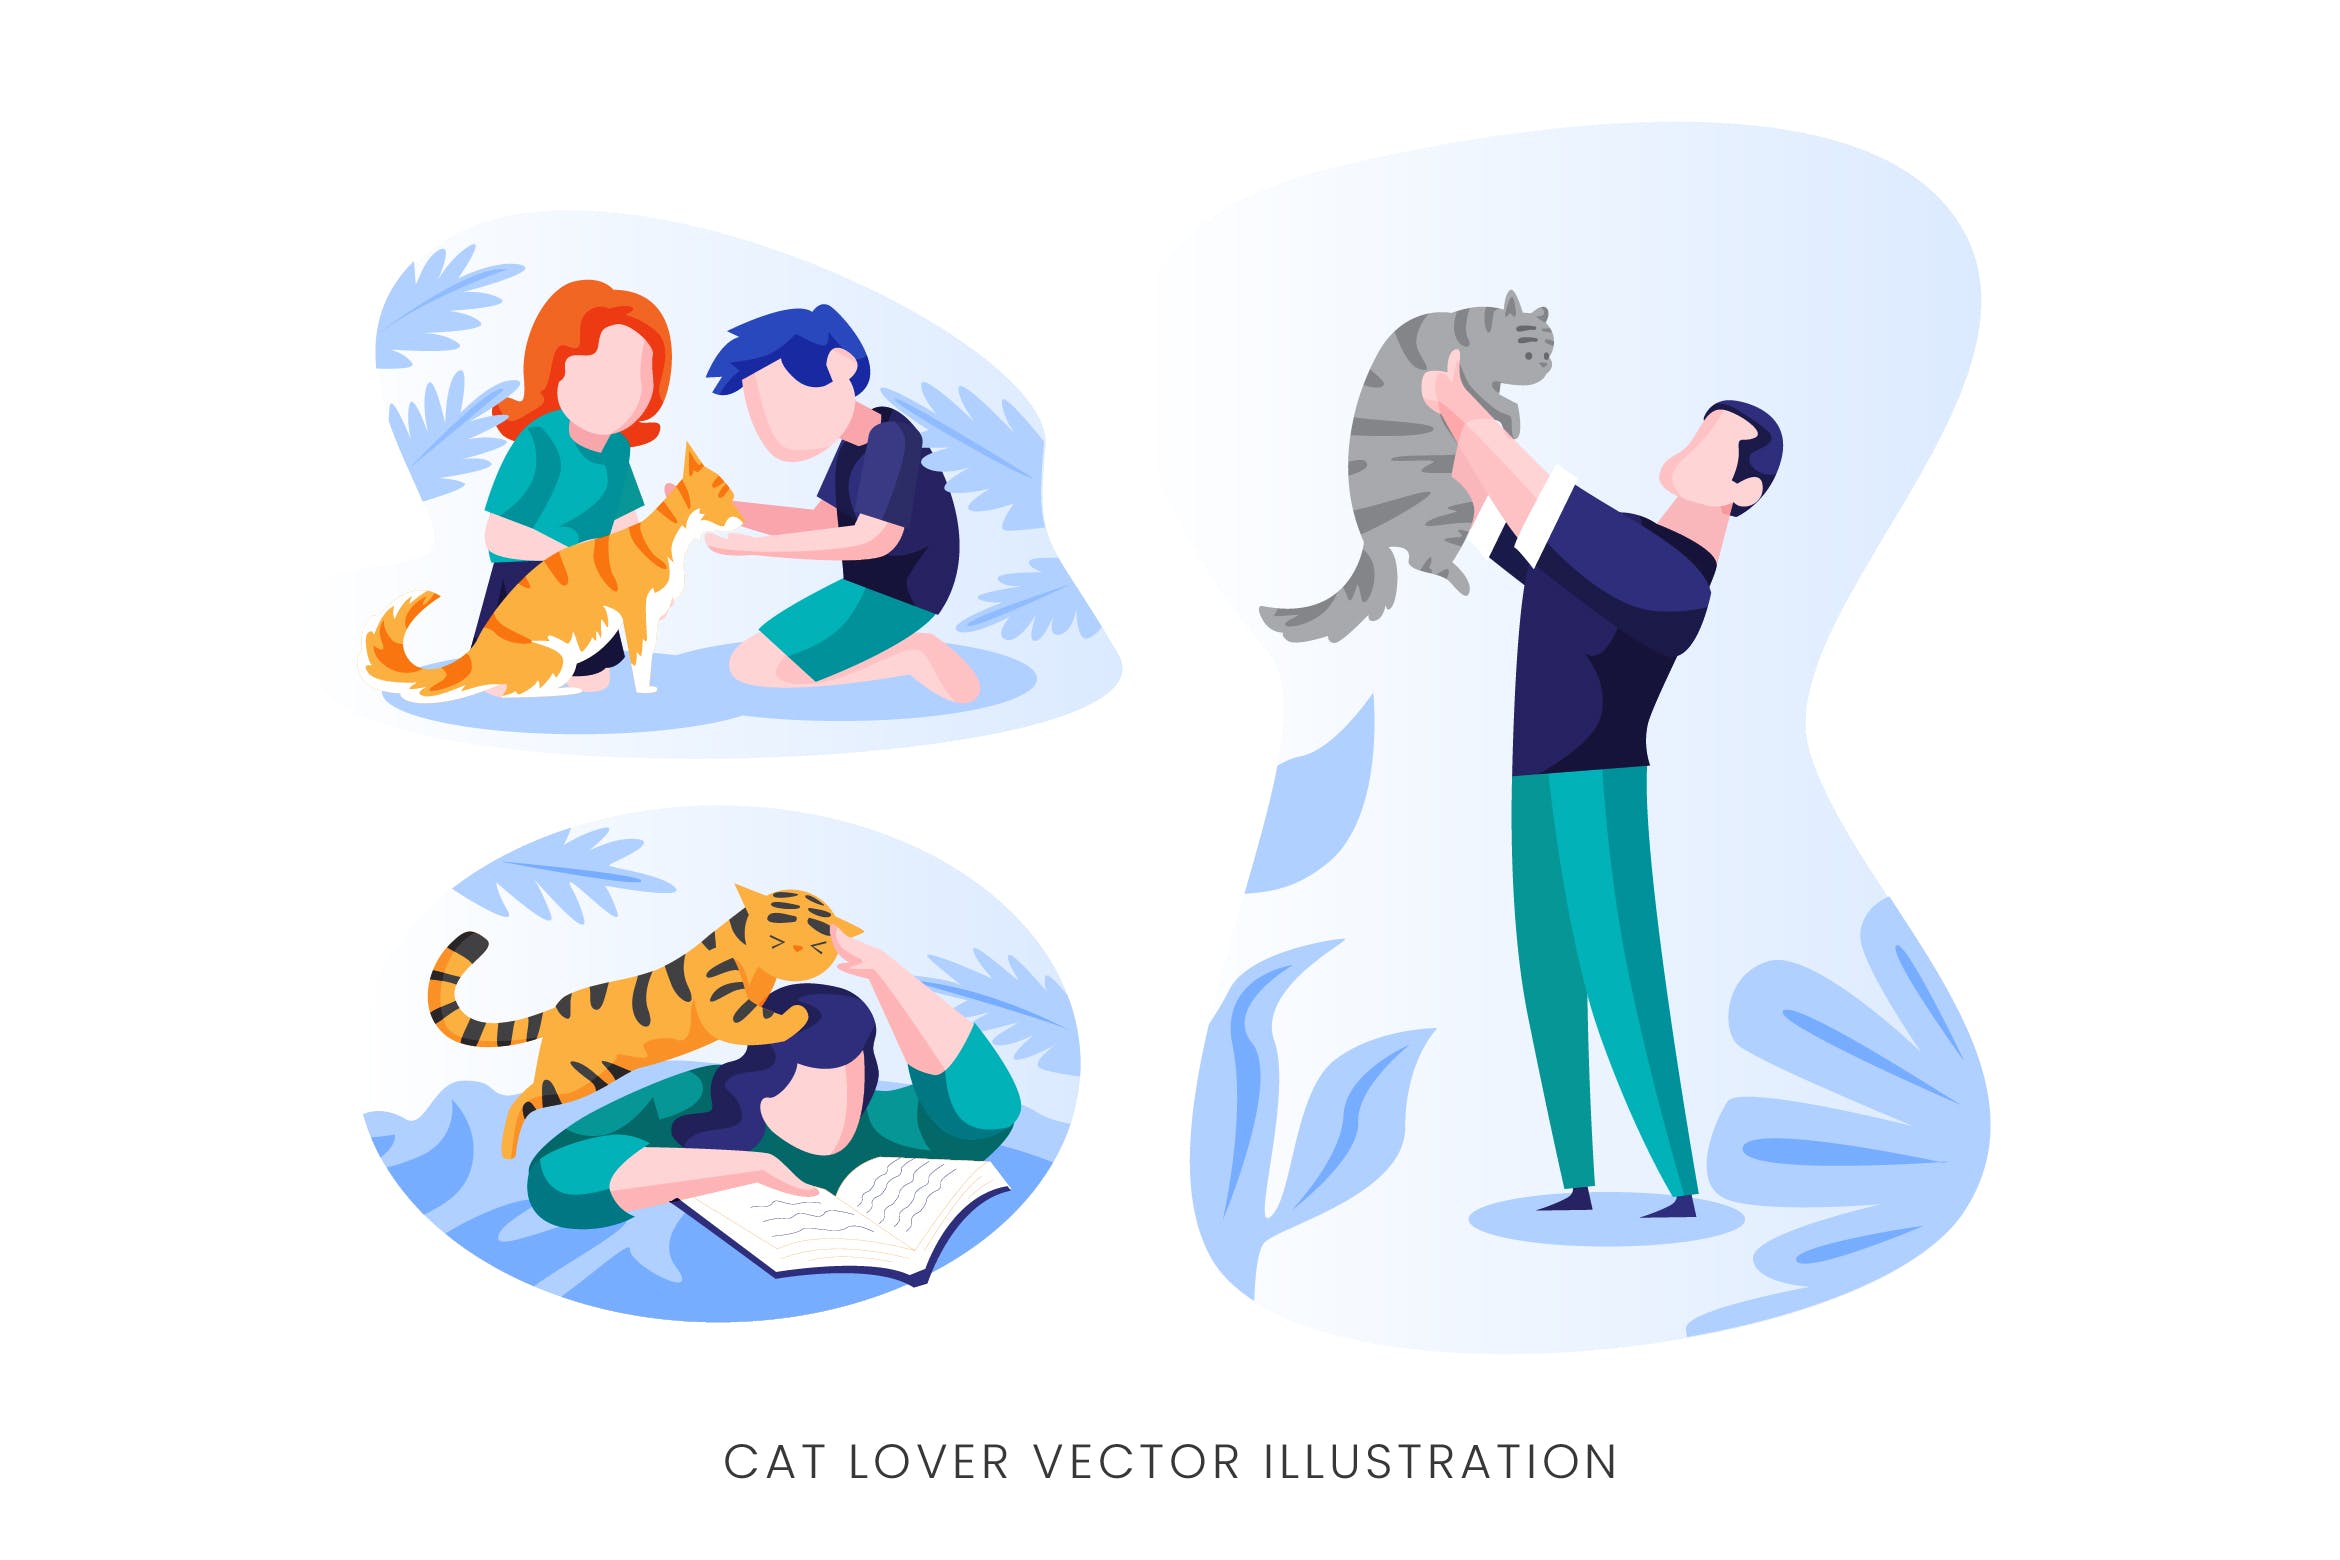 爱猫人士人物形象矢量手绘蚂蚁素材精选设计素材 Cat Lover Vector Character Set插图